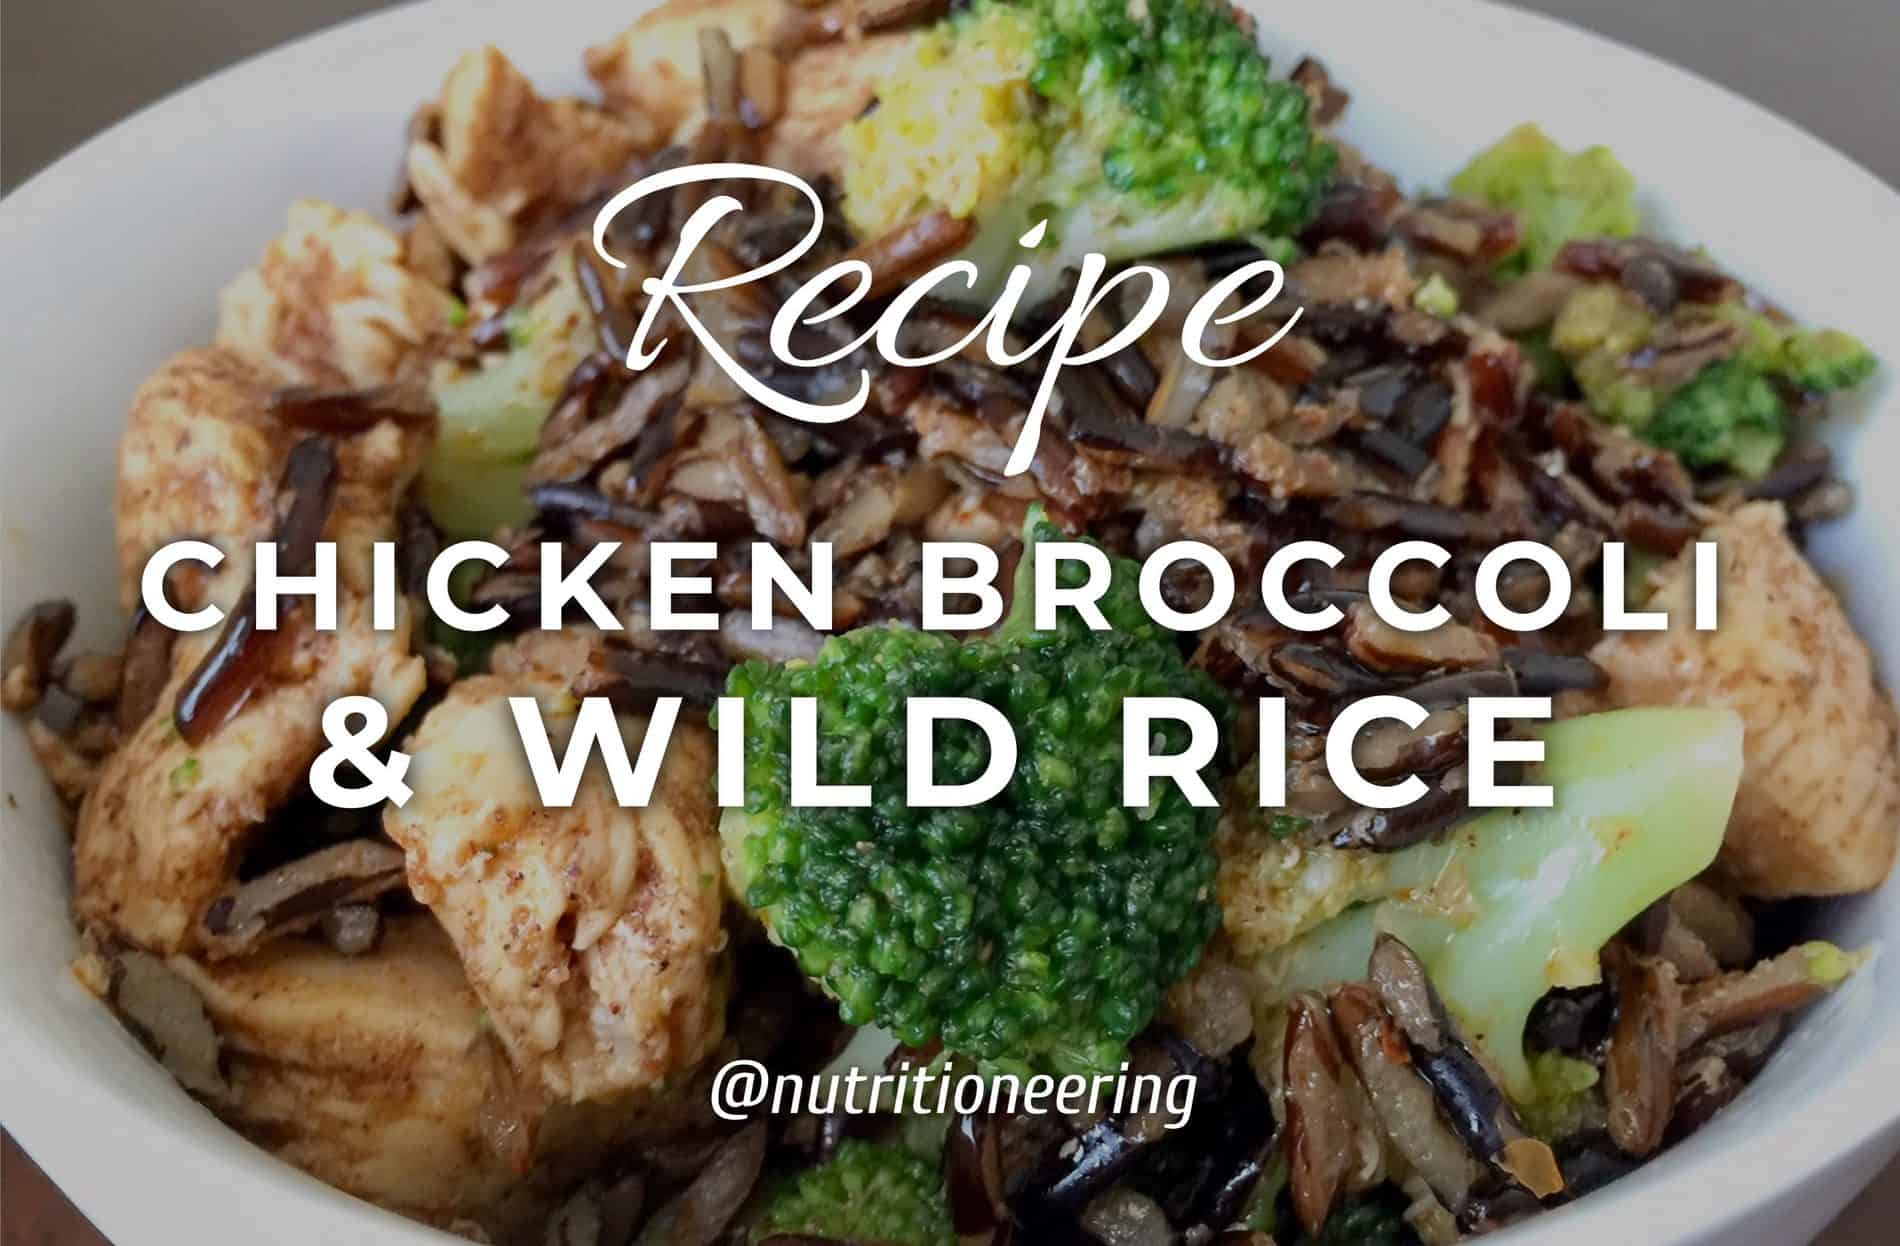 chicken broccoli and rice recipe